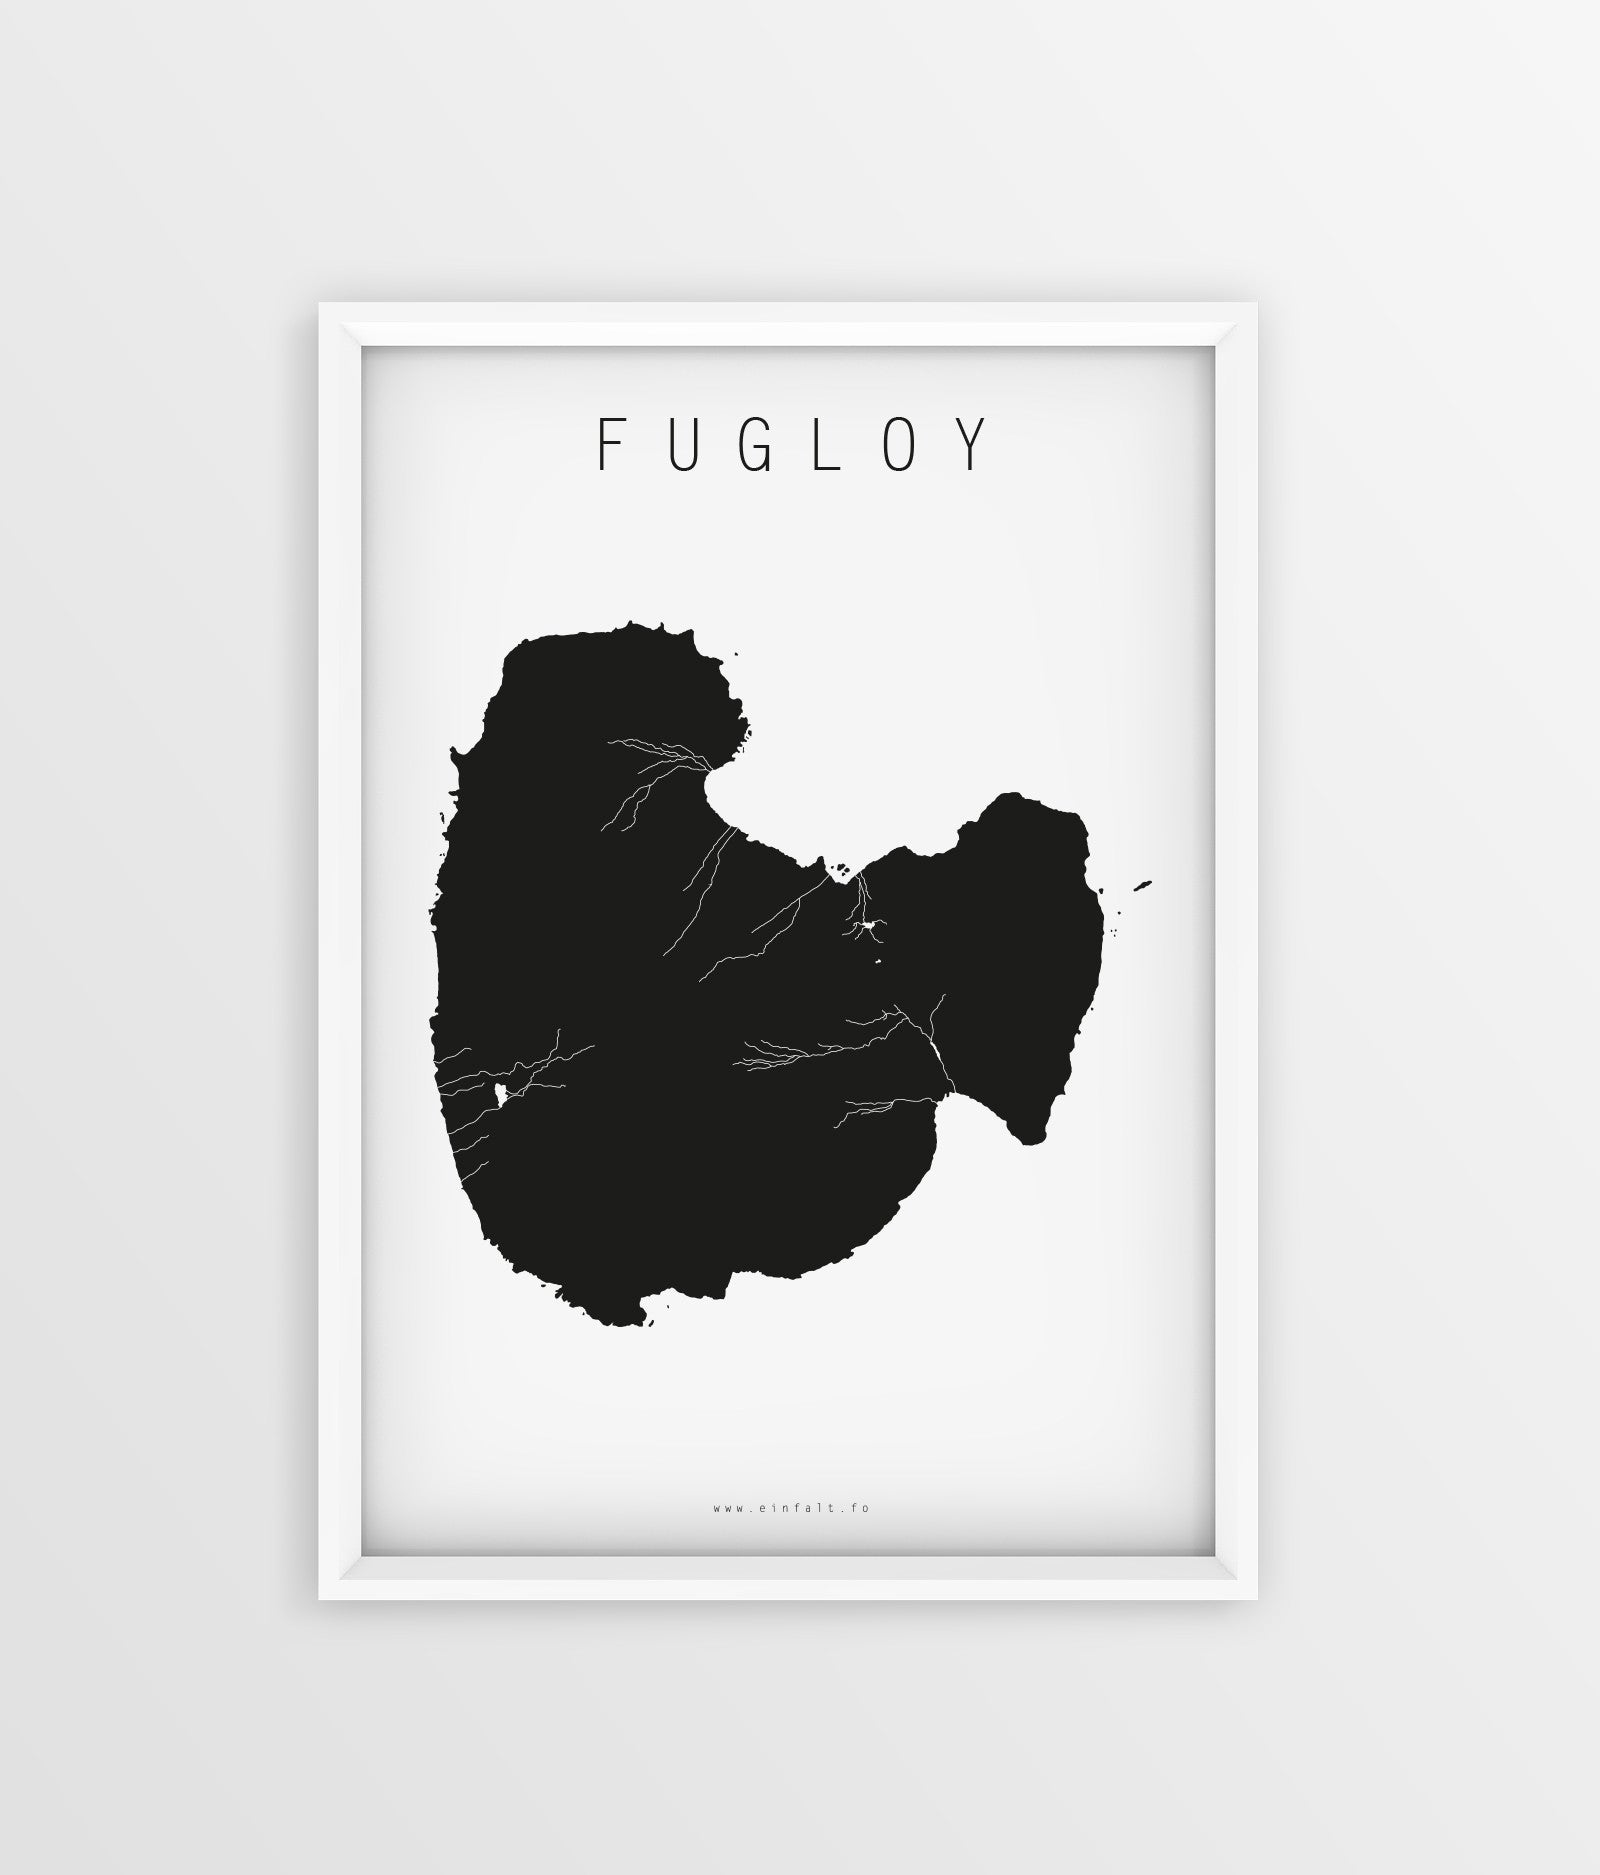 18 oyggjar - Fugloy - Føroyskar Plakatir - Faroe islands posters - Færøske plakater - Føroyar - Færøerne - Føroyakort